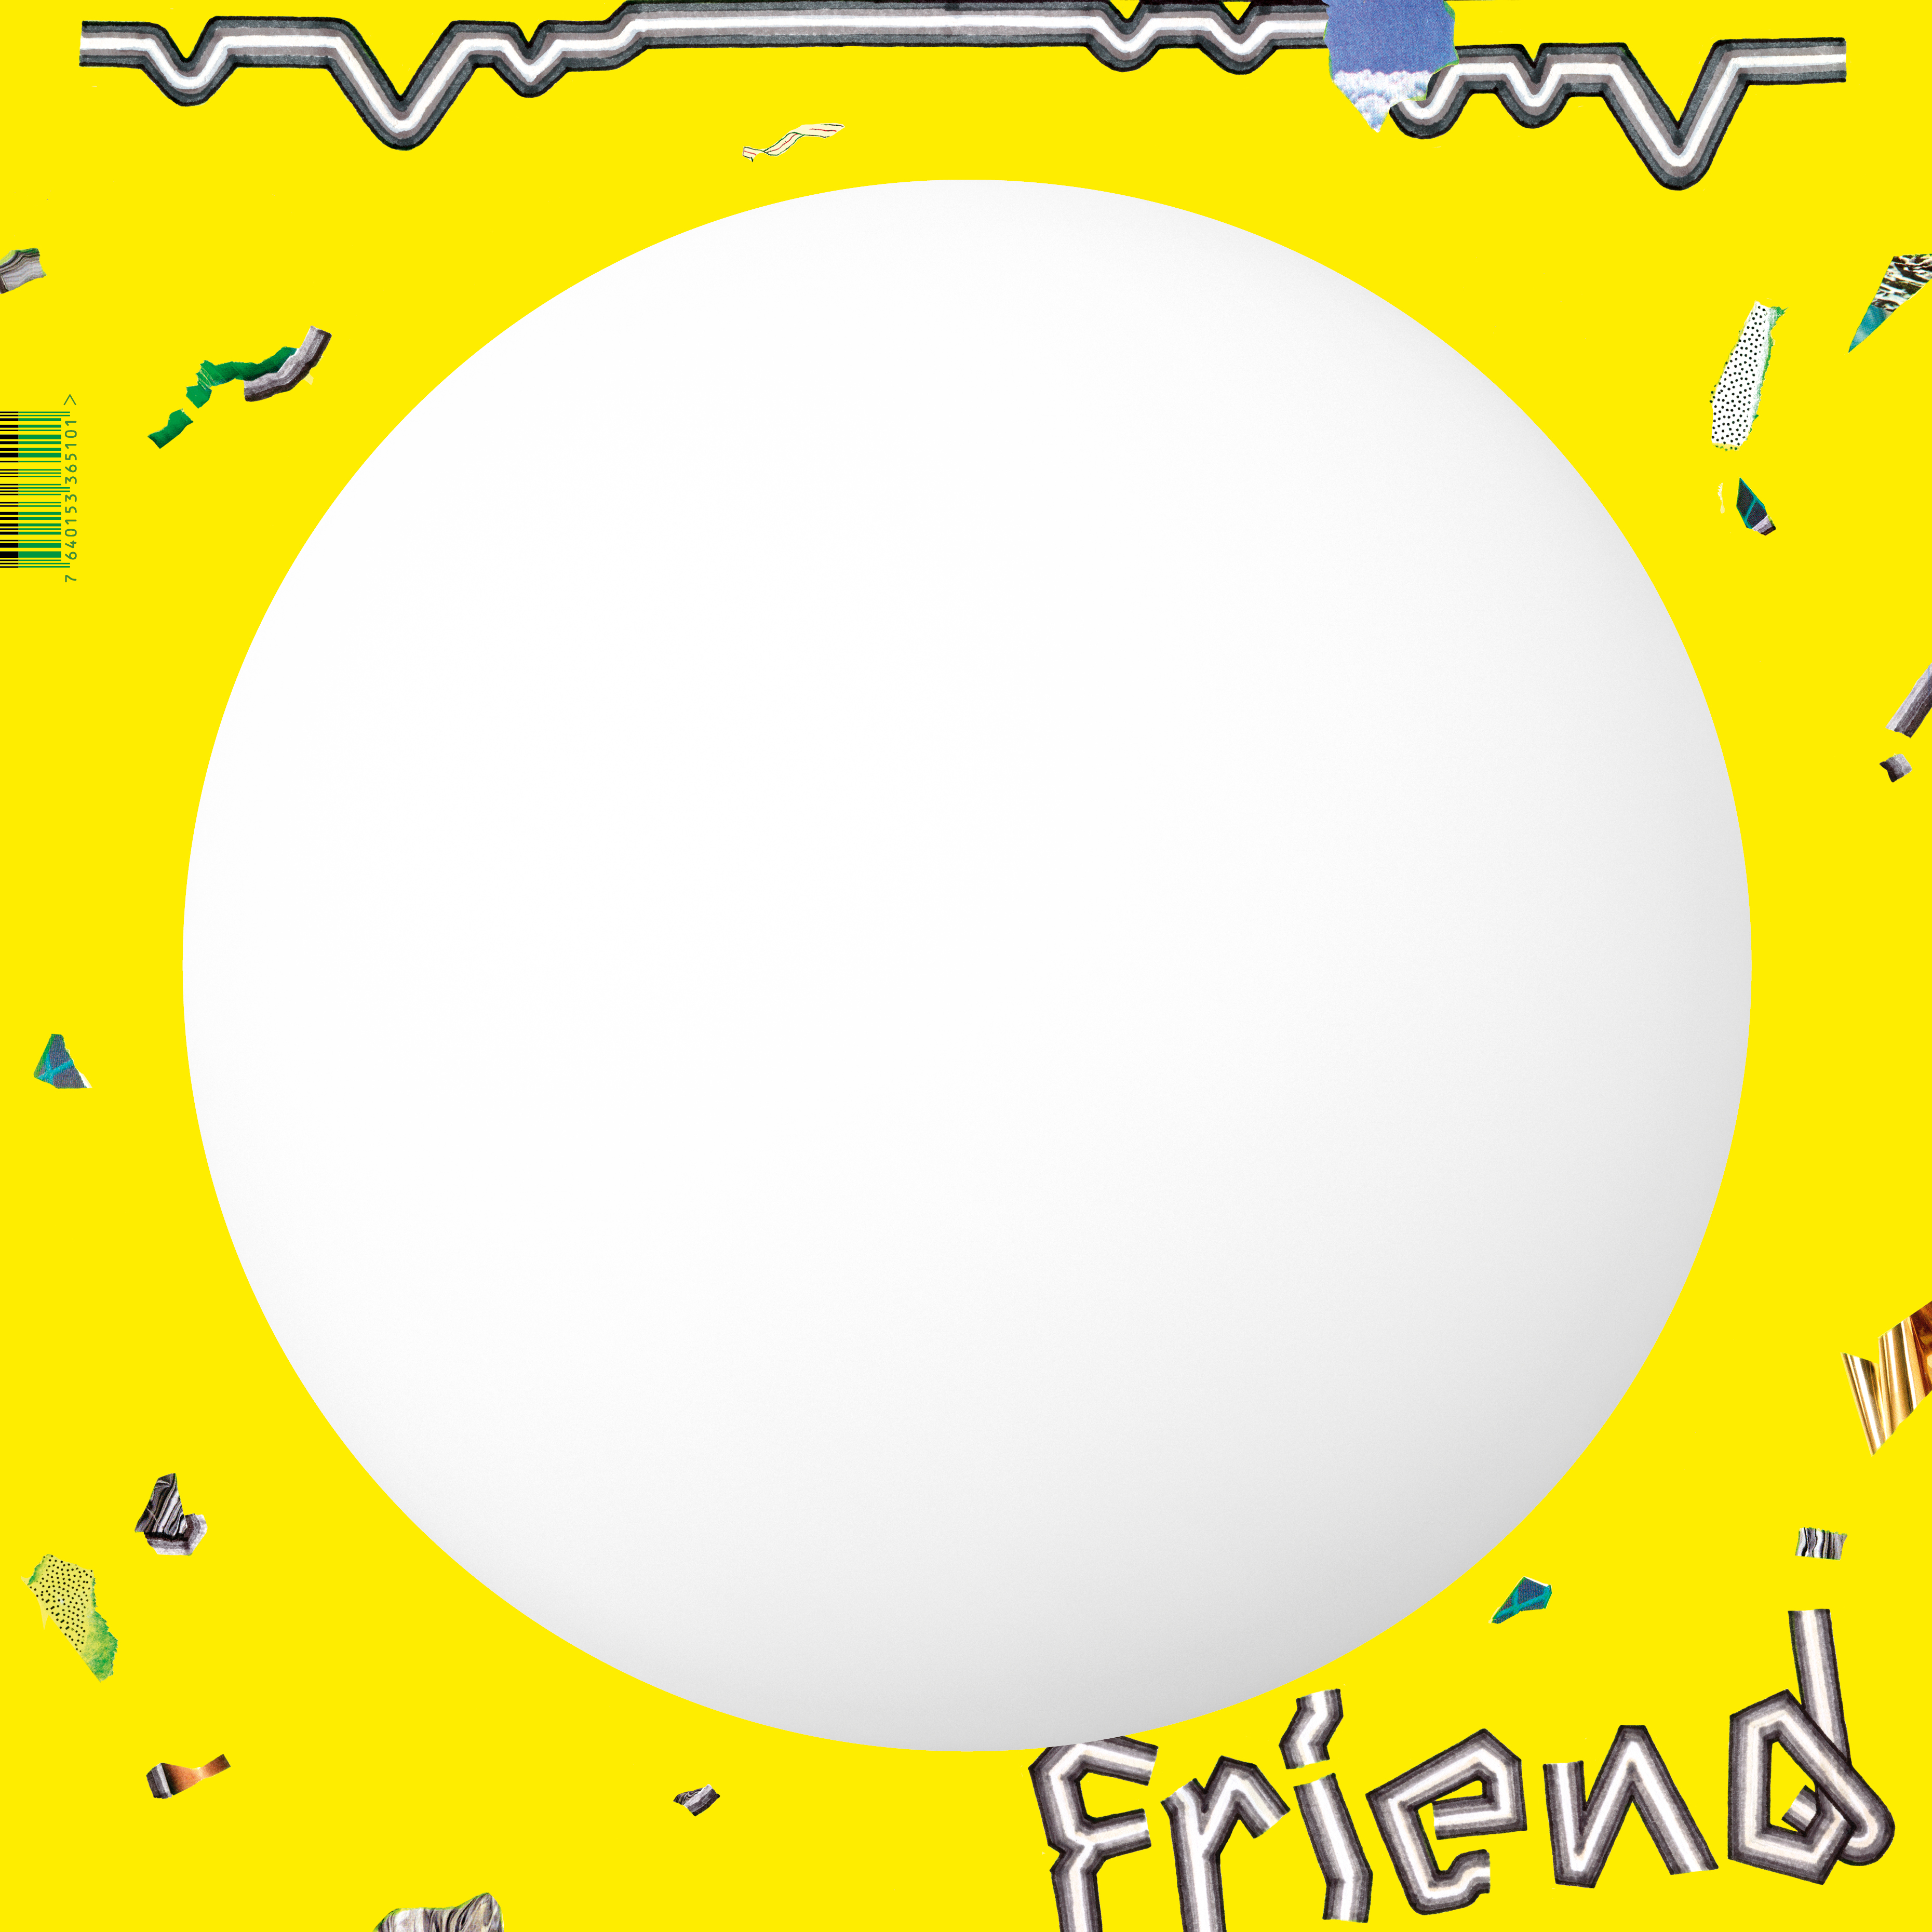 Friend LP